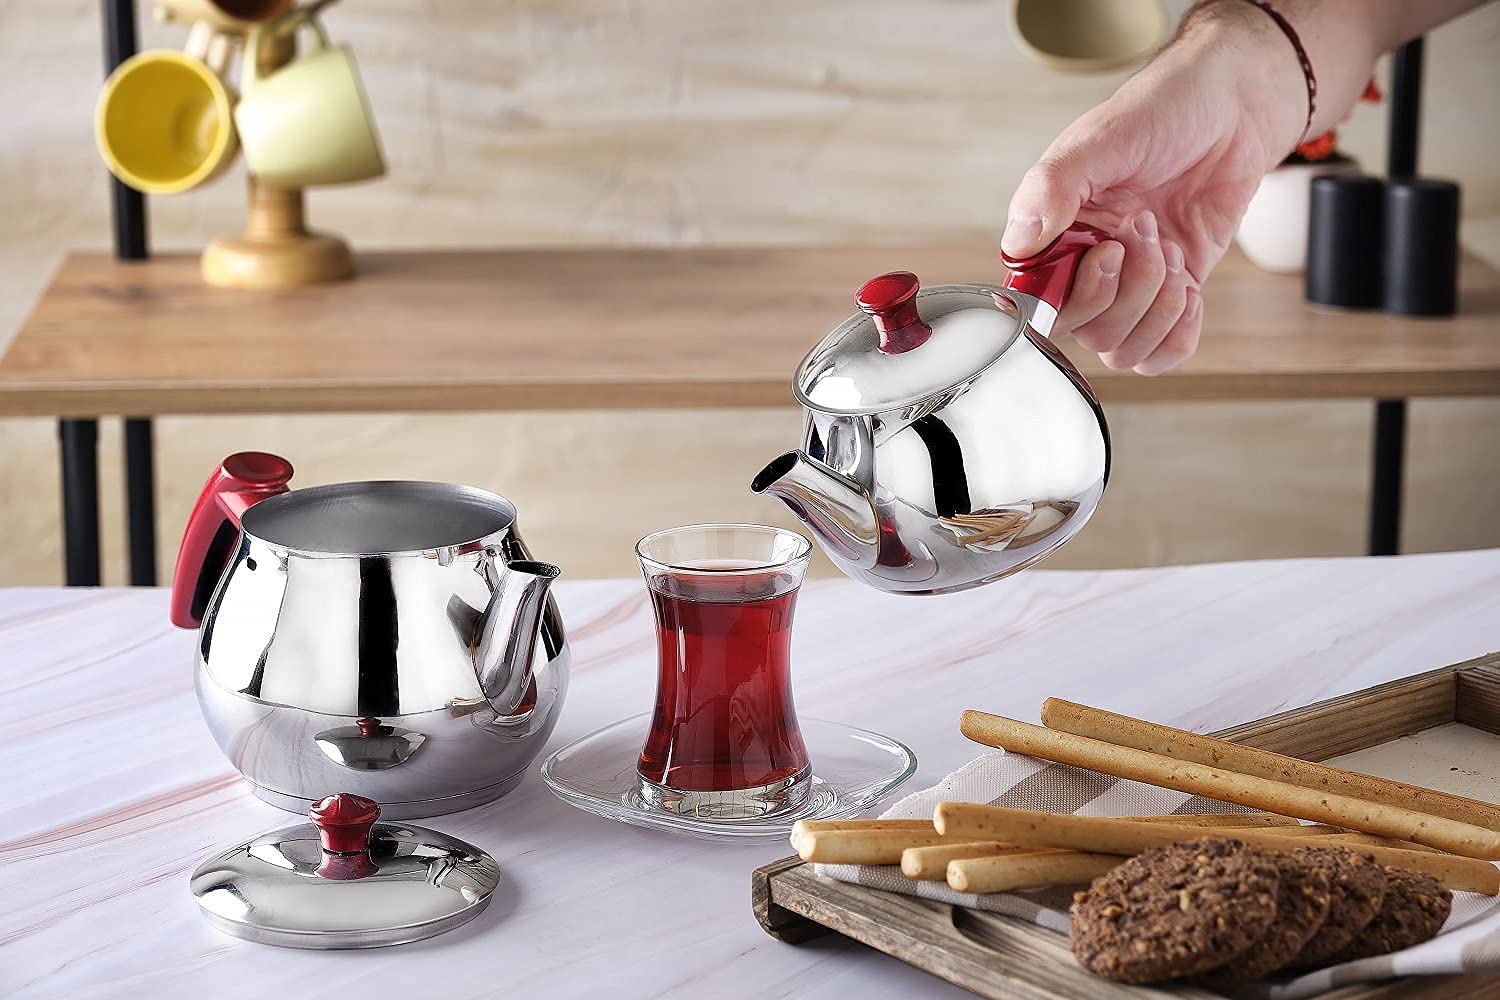 ست قوری ترکی مدل DESTALYA Turkish Teapot Set- ارسال ۱۰ الی ۱۵ روز کاری